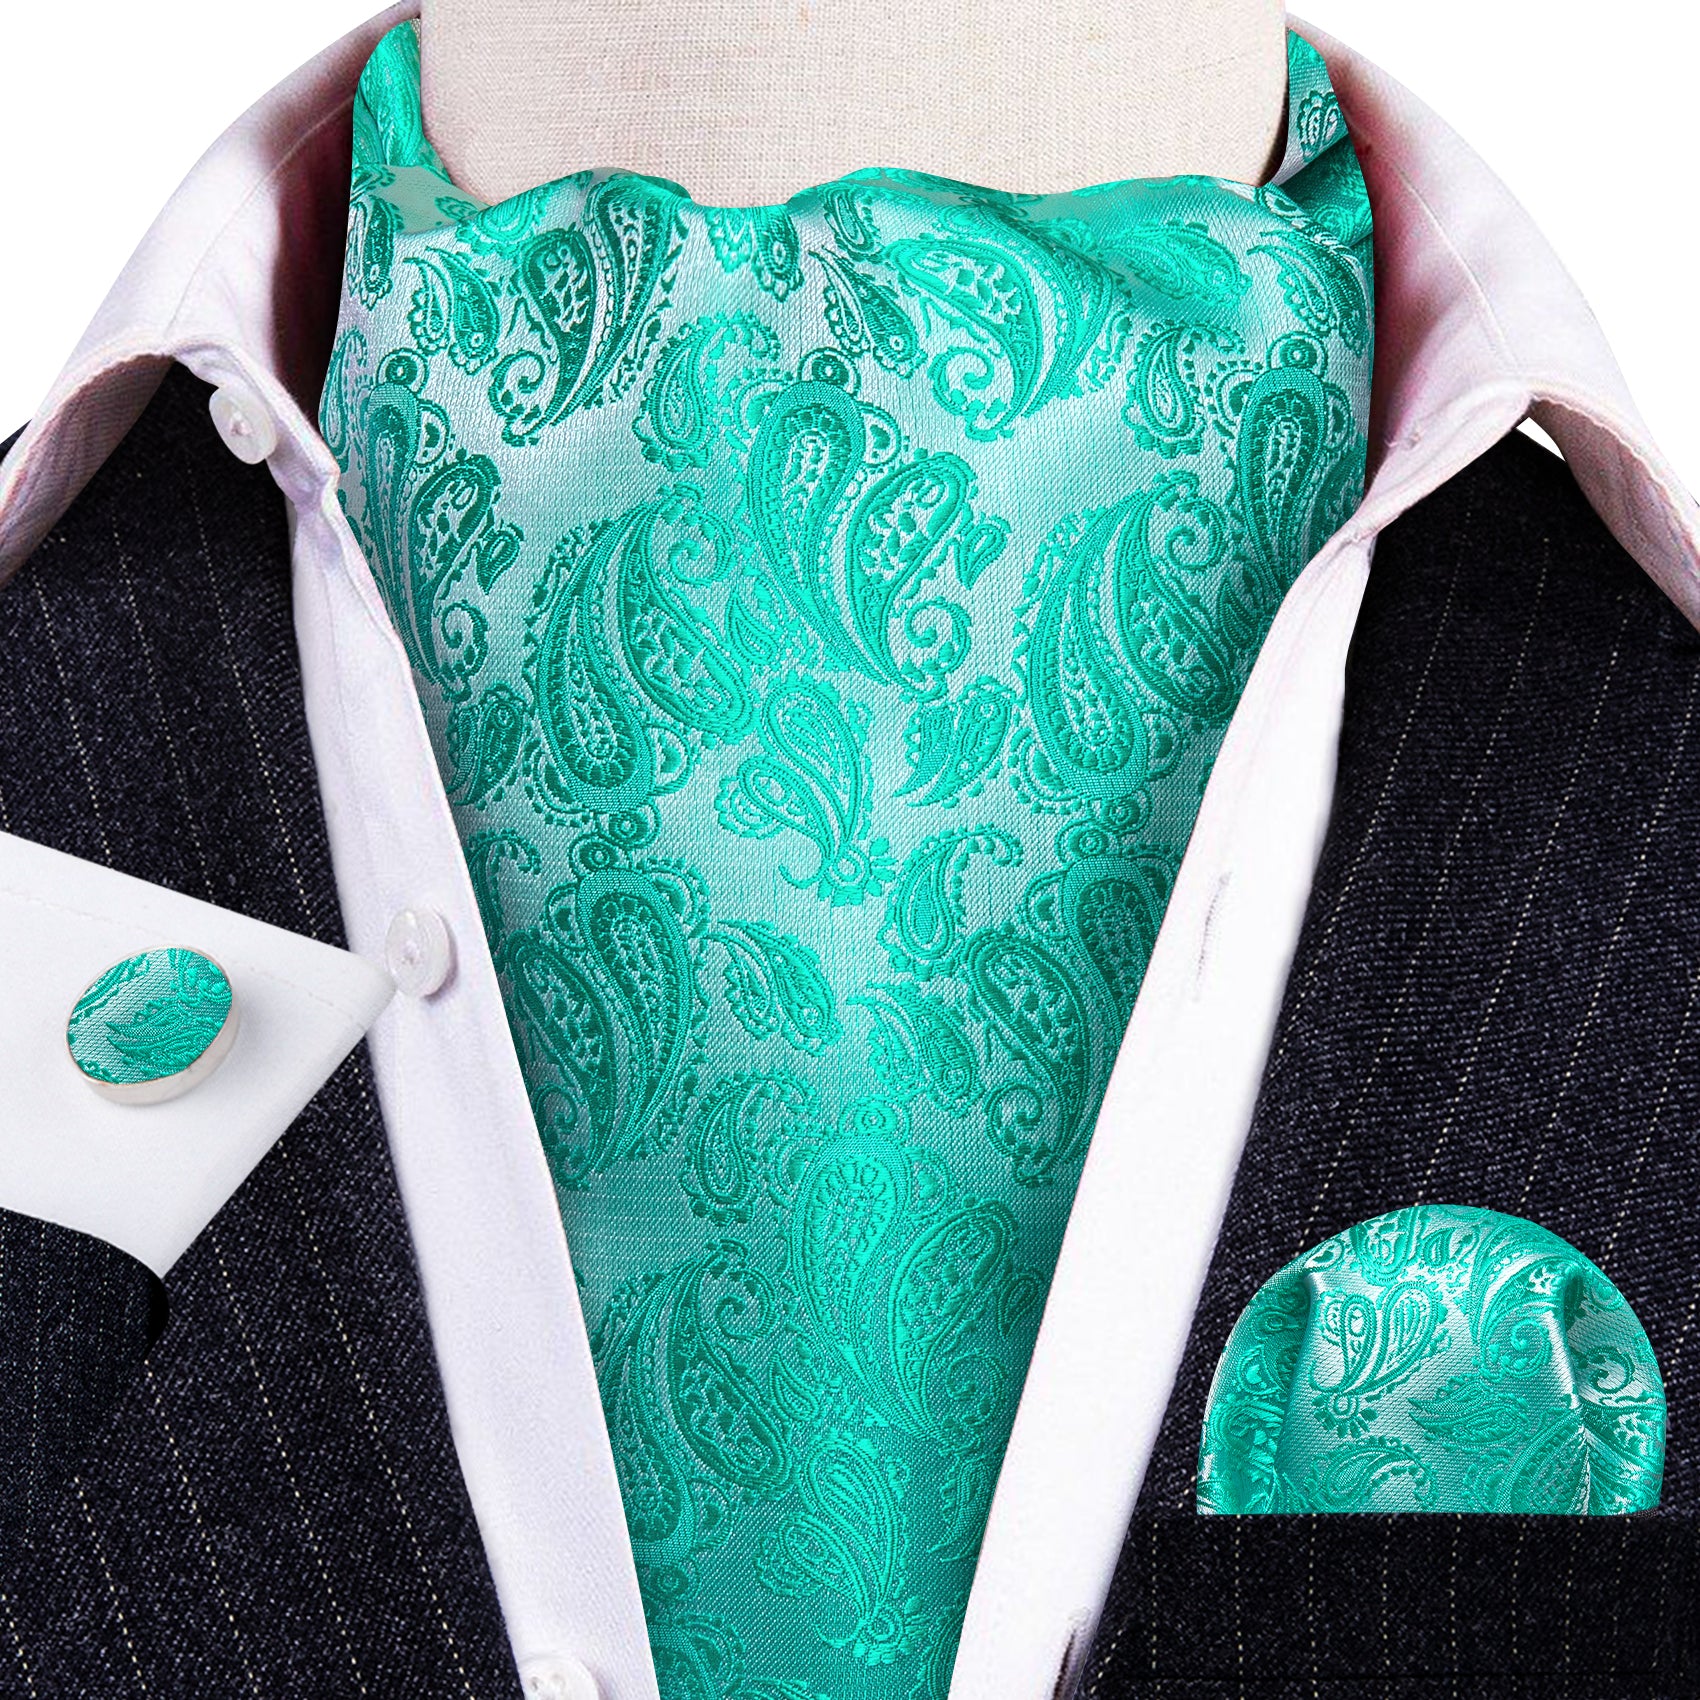 Aqua Silver Paisley Silk Ascot Tie Handkerchief Cufflinks Set